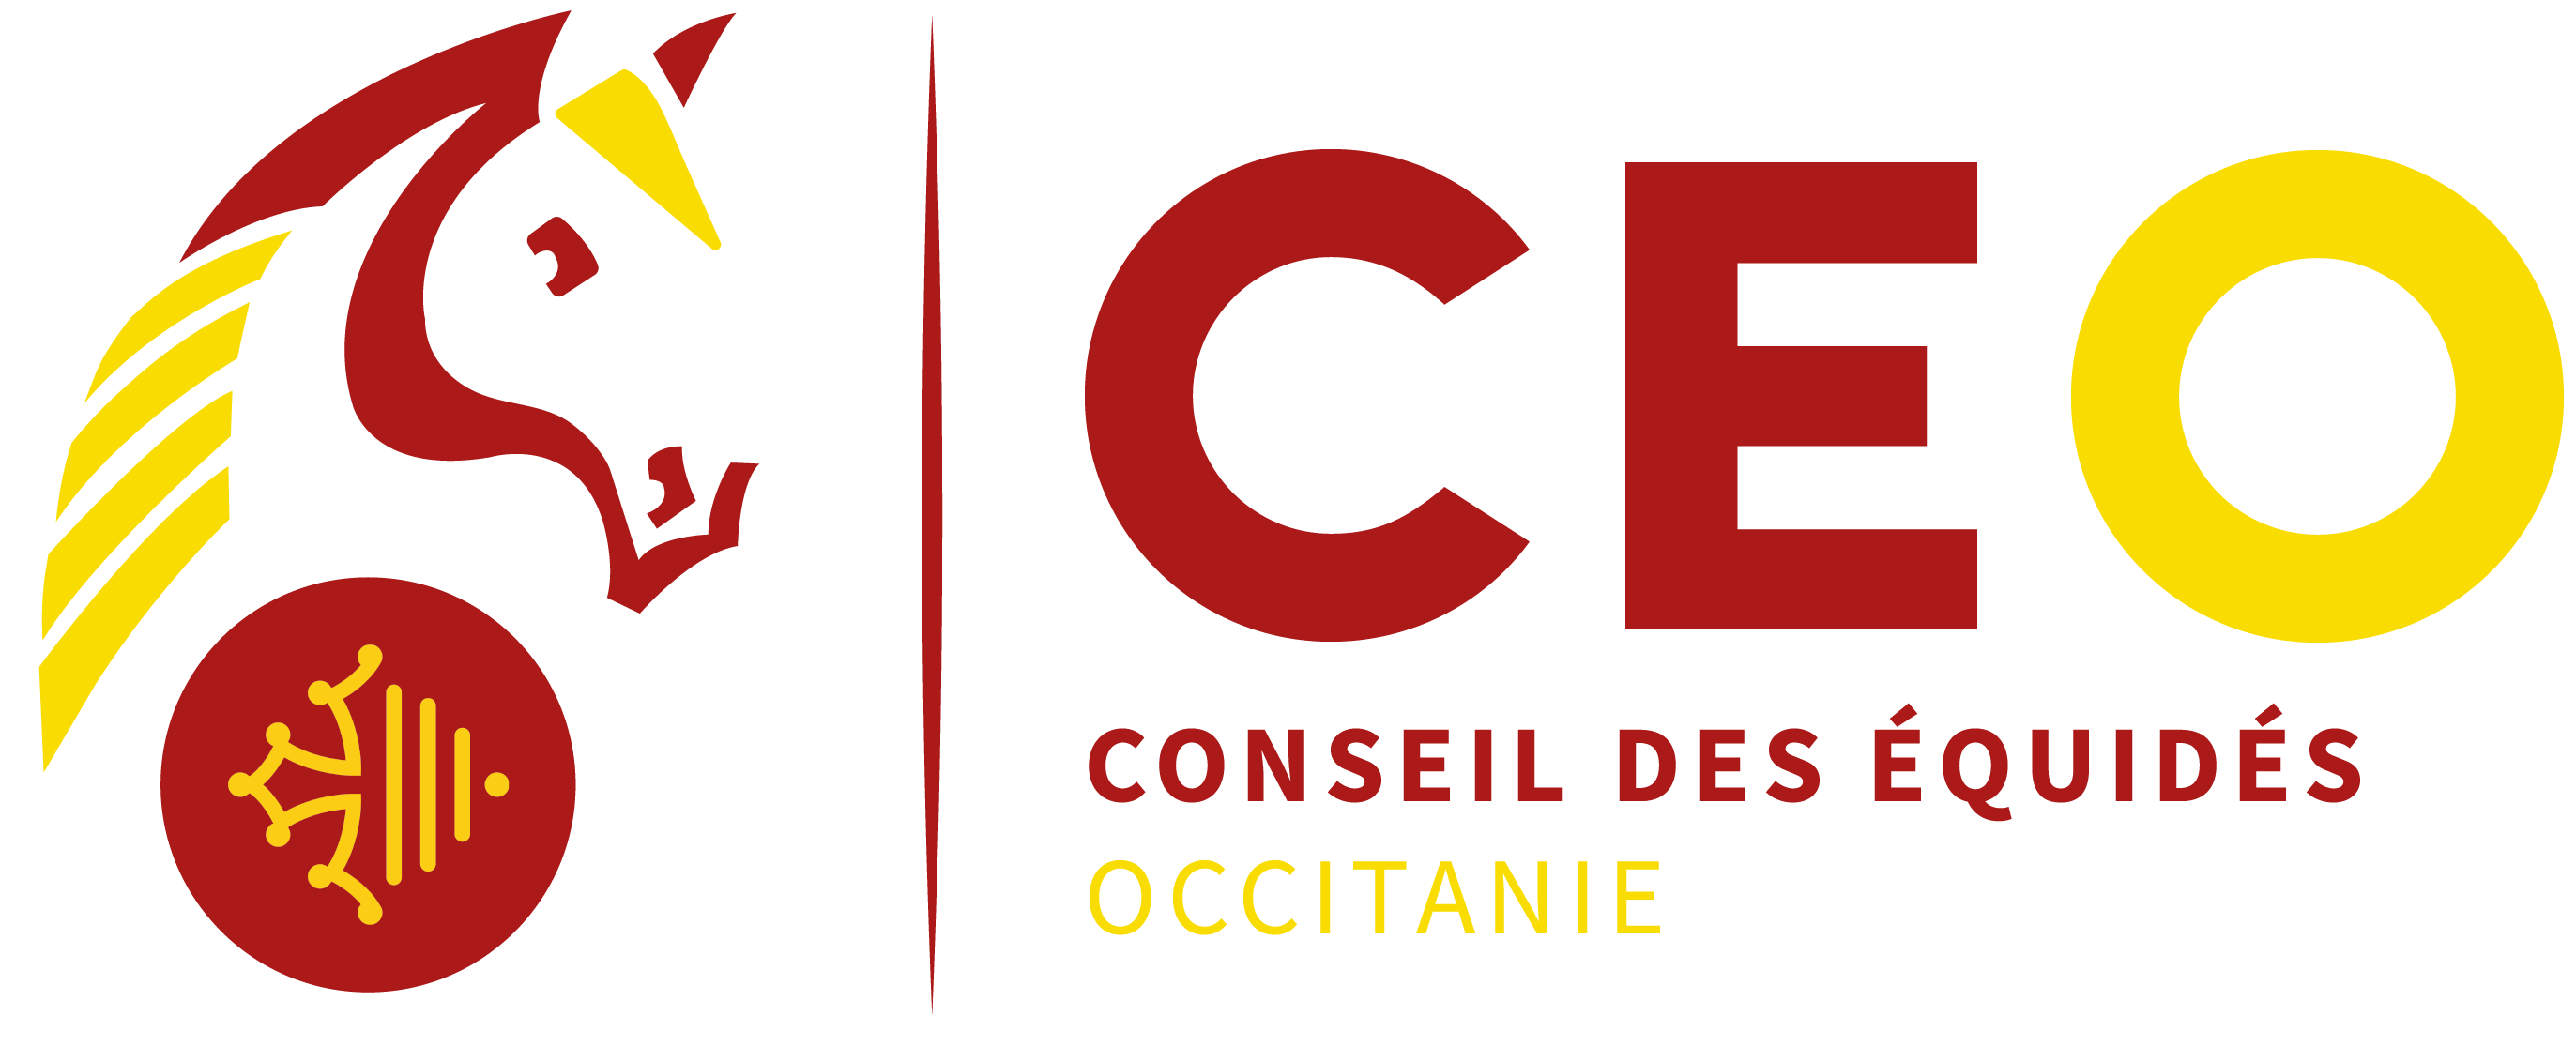 Fédération - Conseil des équidés d'Occitanie